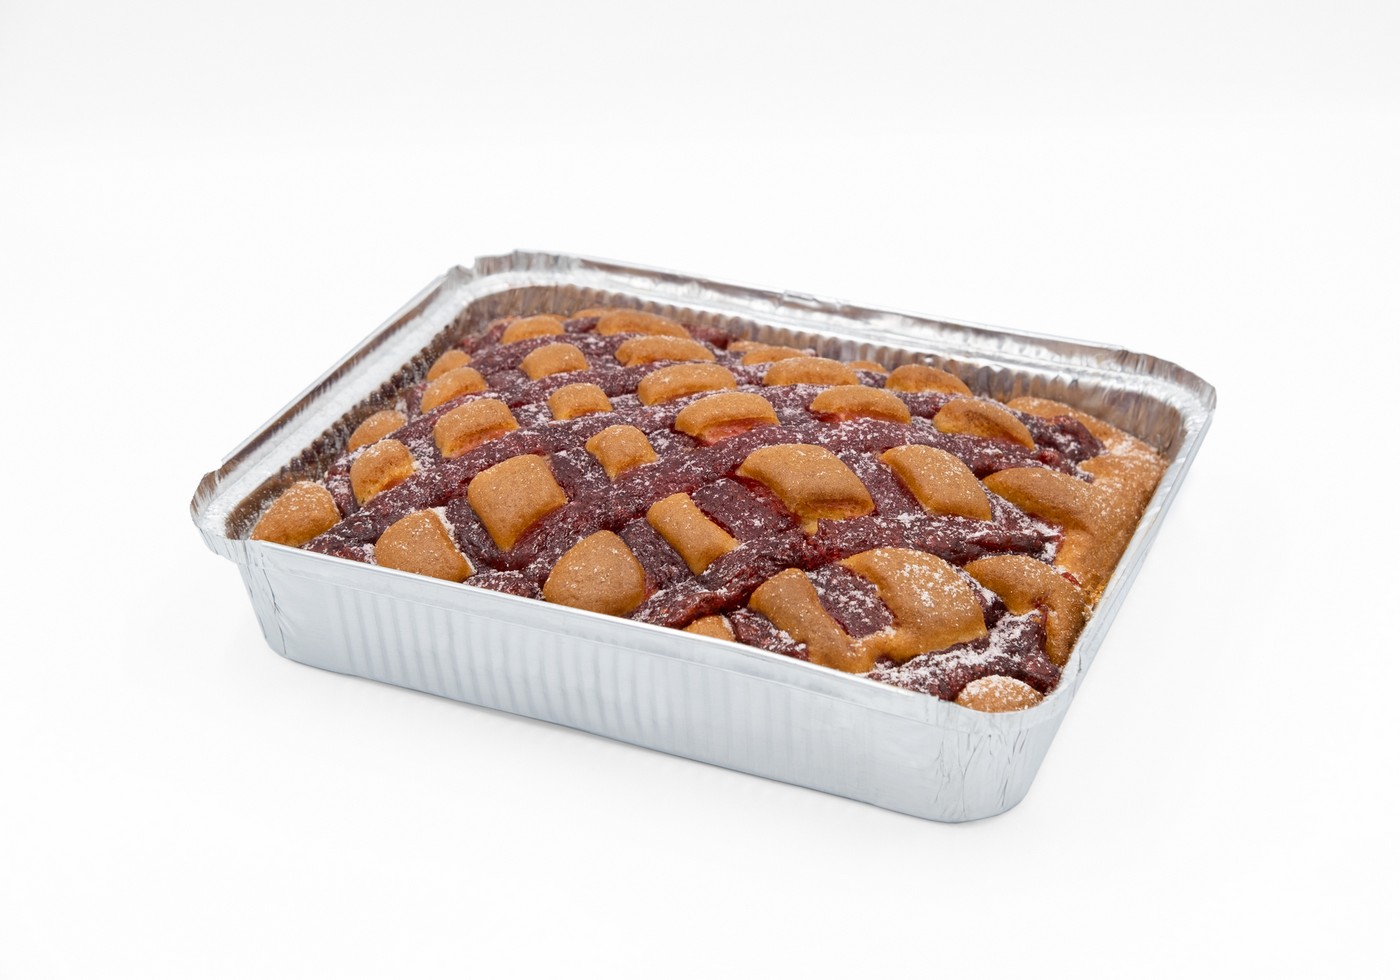 Домашний пирог с малиной, упаковка 1,2кг (2 пирога по 600гр)